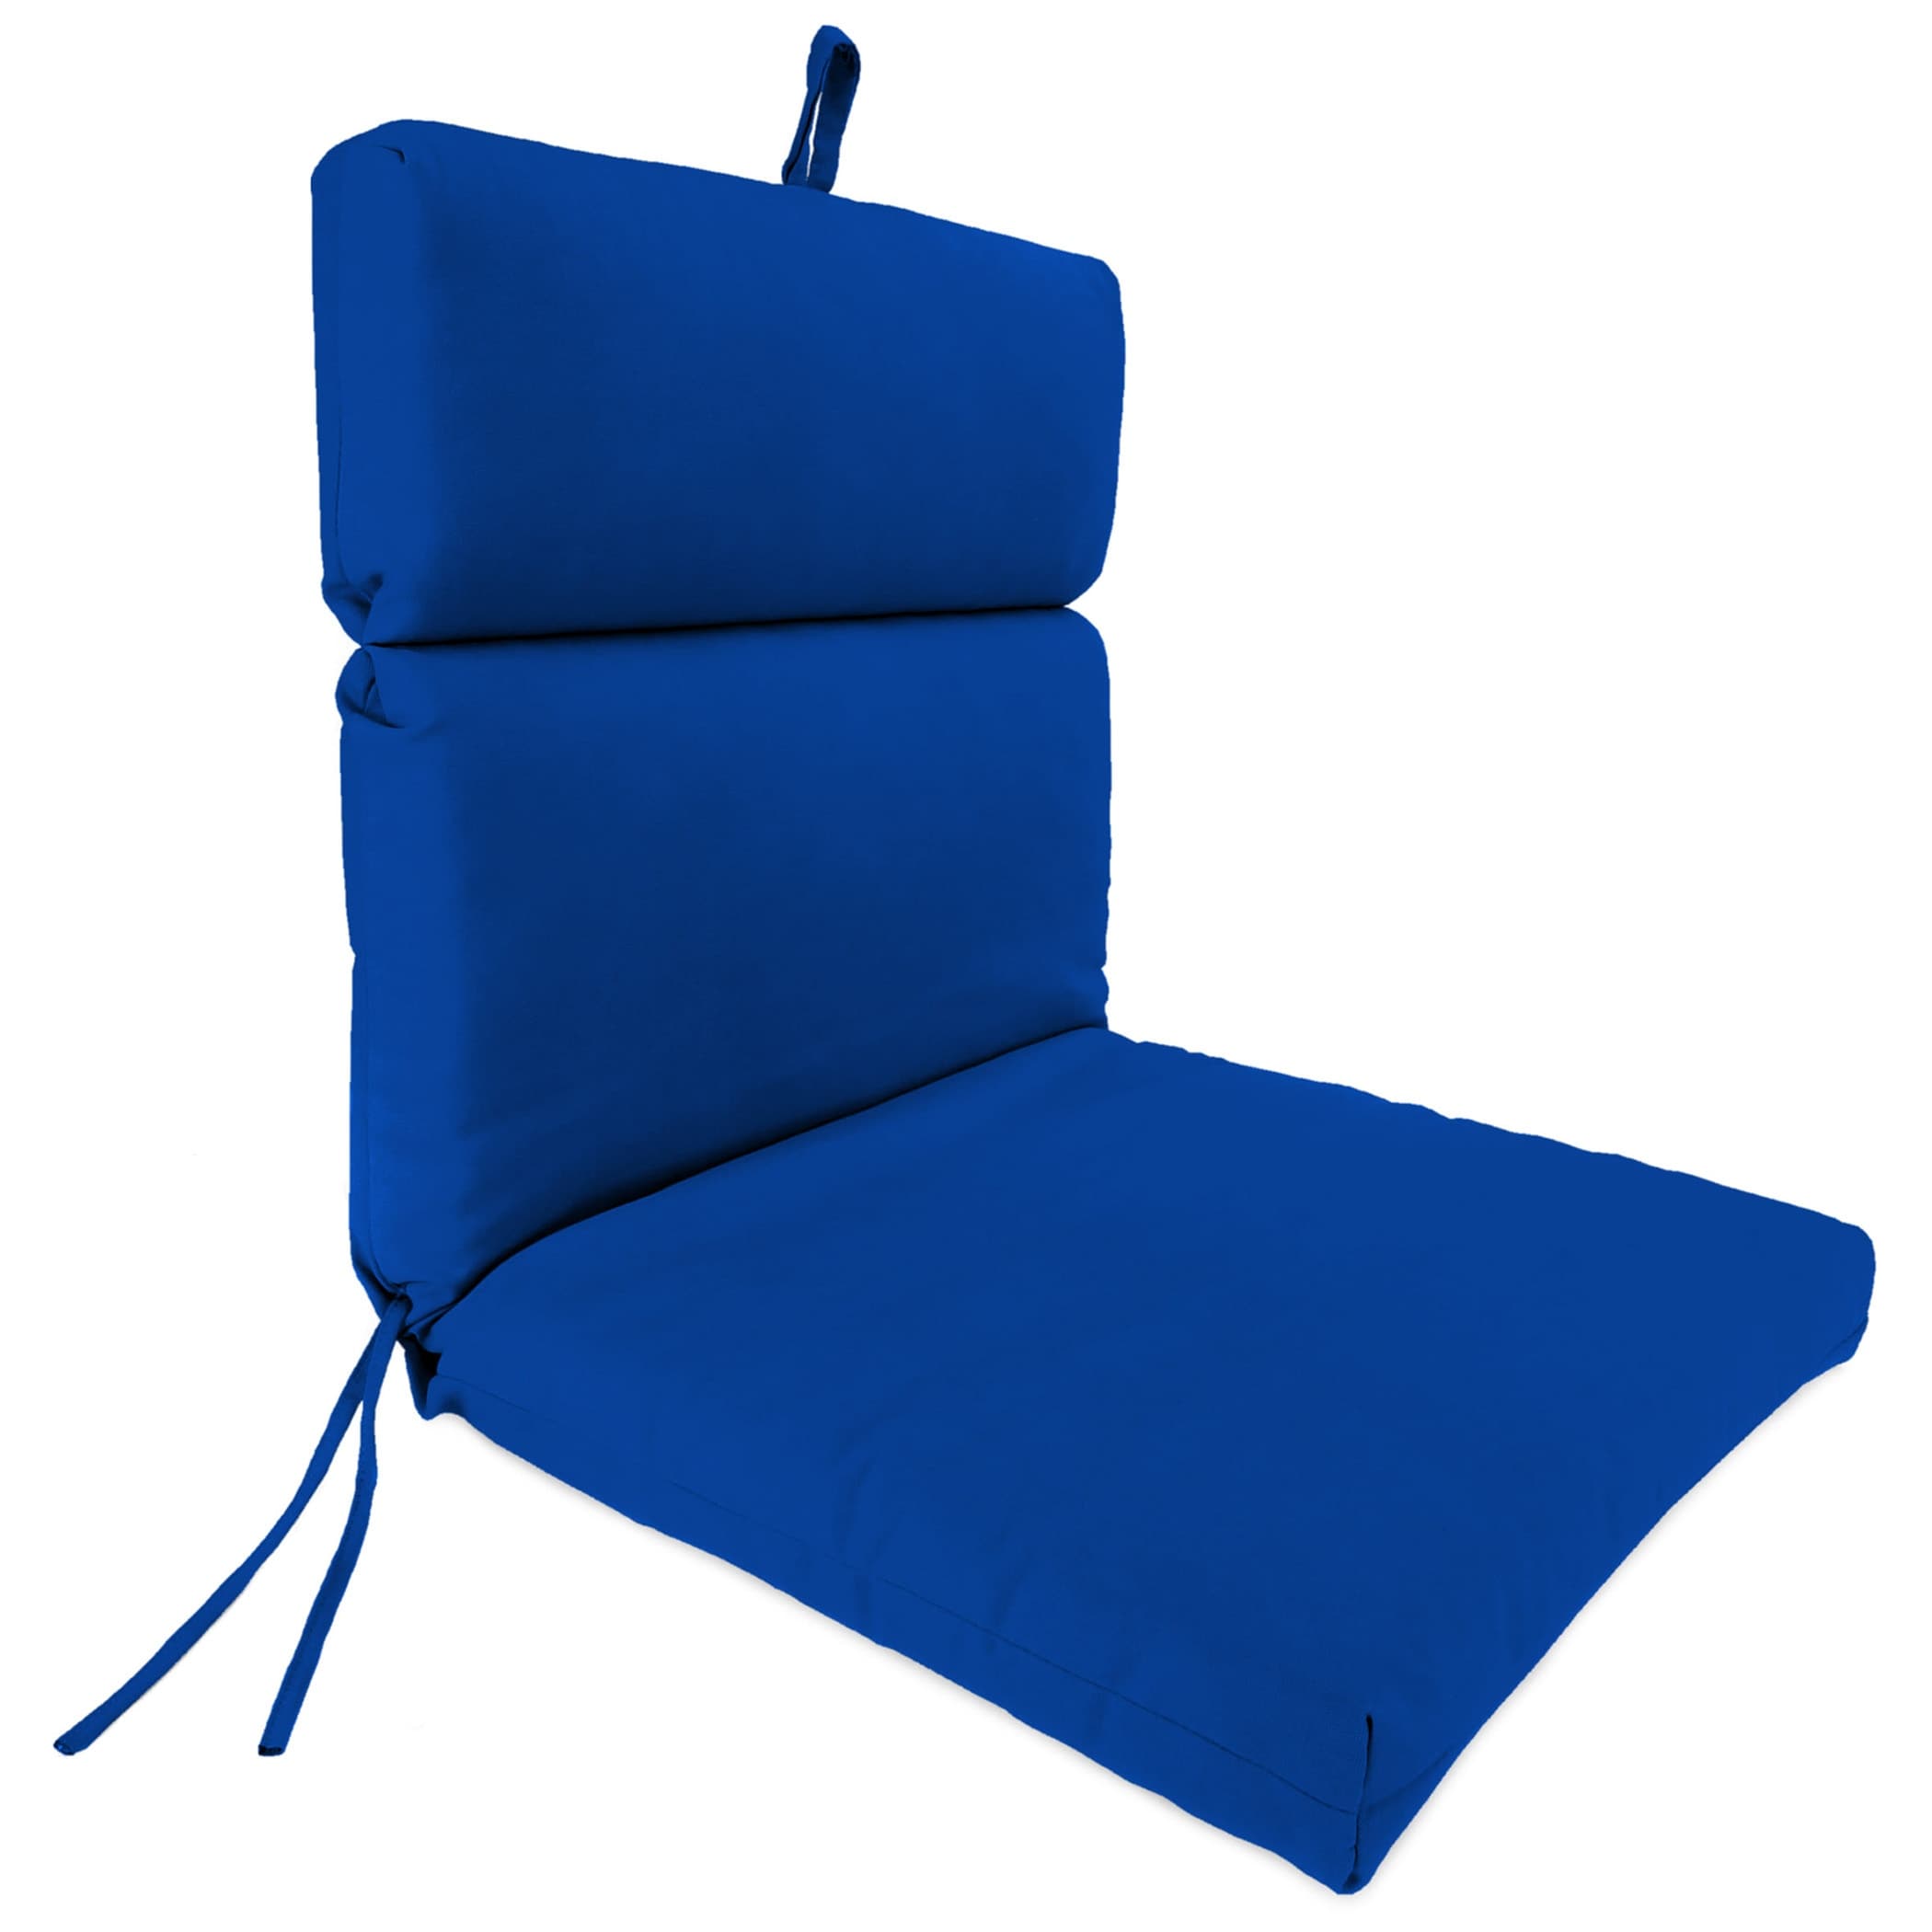 Sunbrella 22" x 44" Blue Solid Rectangular Outdoor Chair Cushion - 44'' L x 22'' W x 4'' H